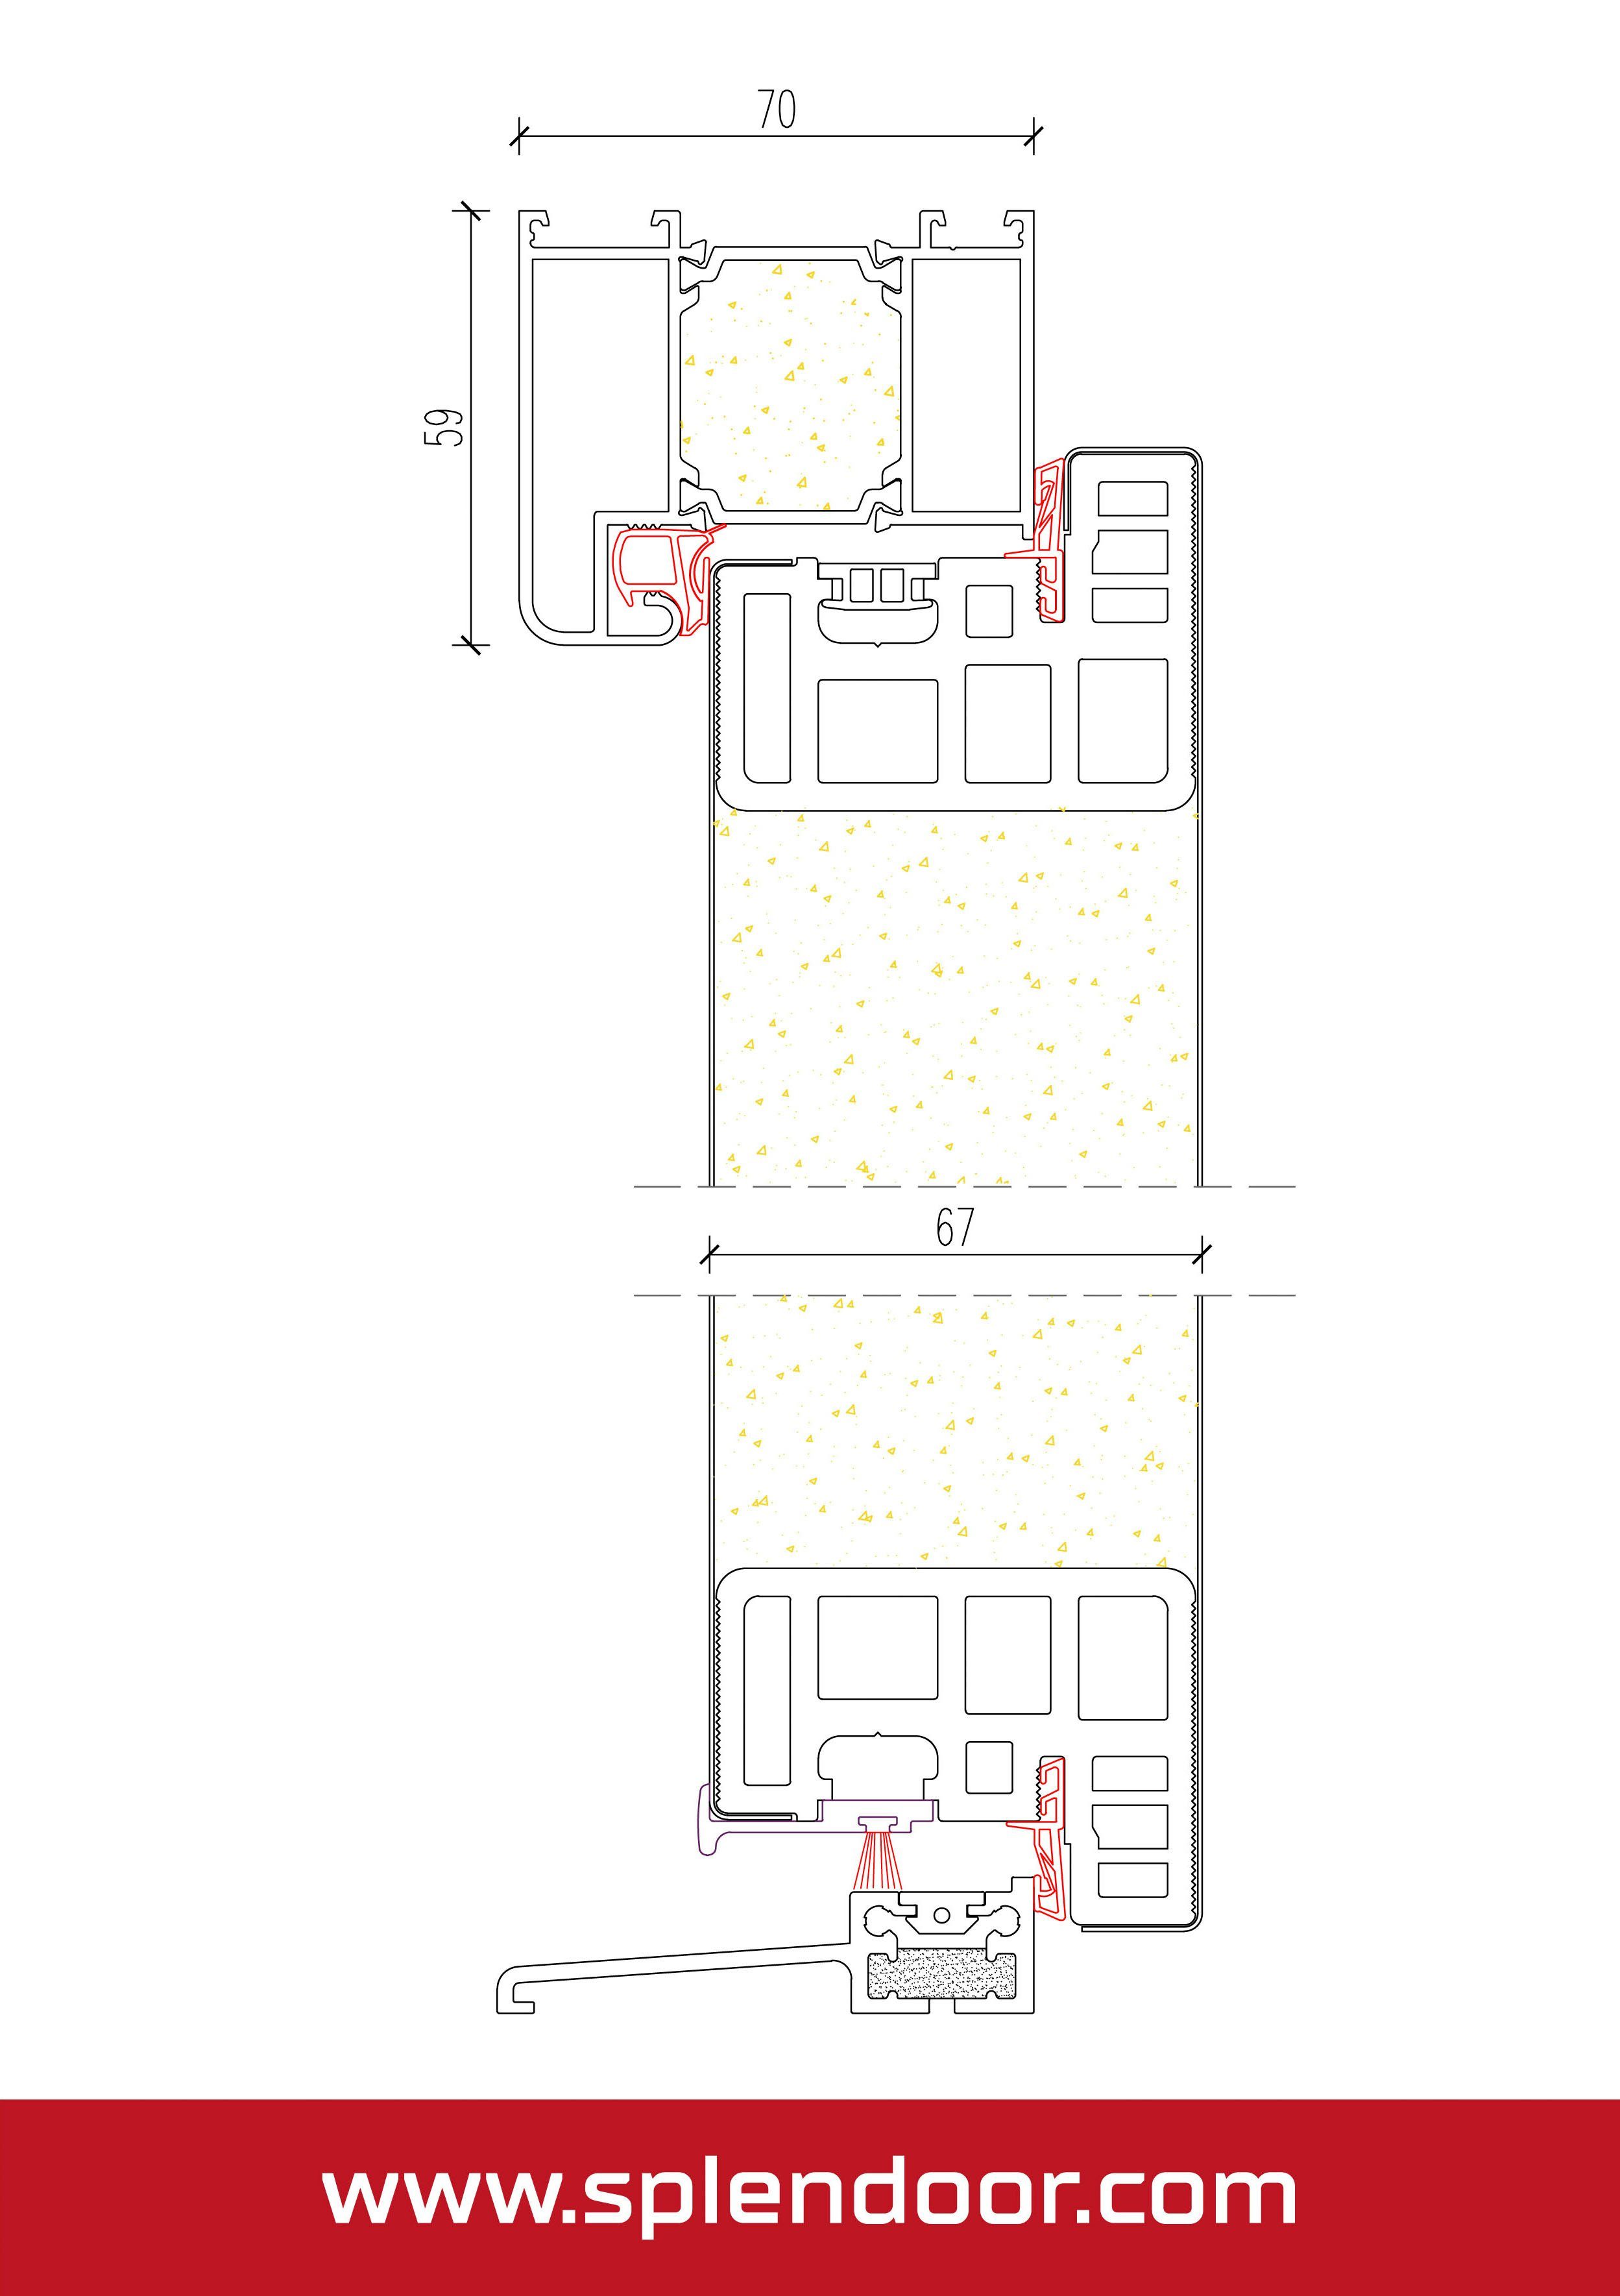 ATHEN 3-fach wärmegedämmt, einbruchhemmend RC2 Verglasung, mit Haustür mit & Türrahmen anthrazit (Set), Prime SplenDoor